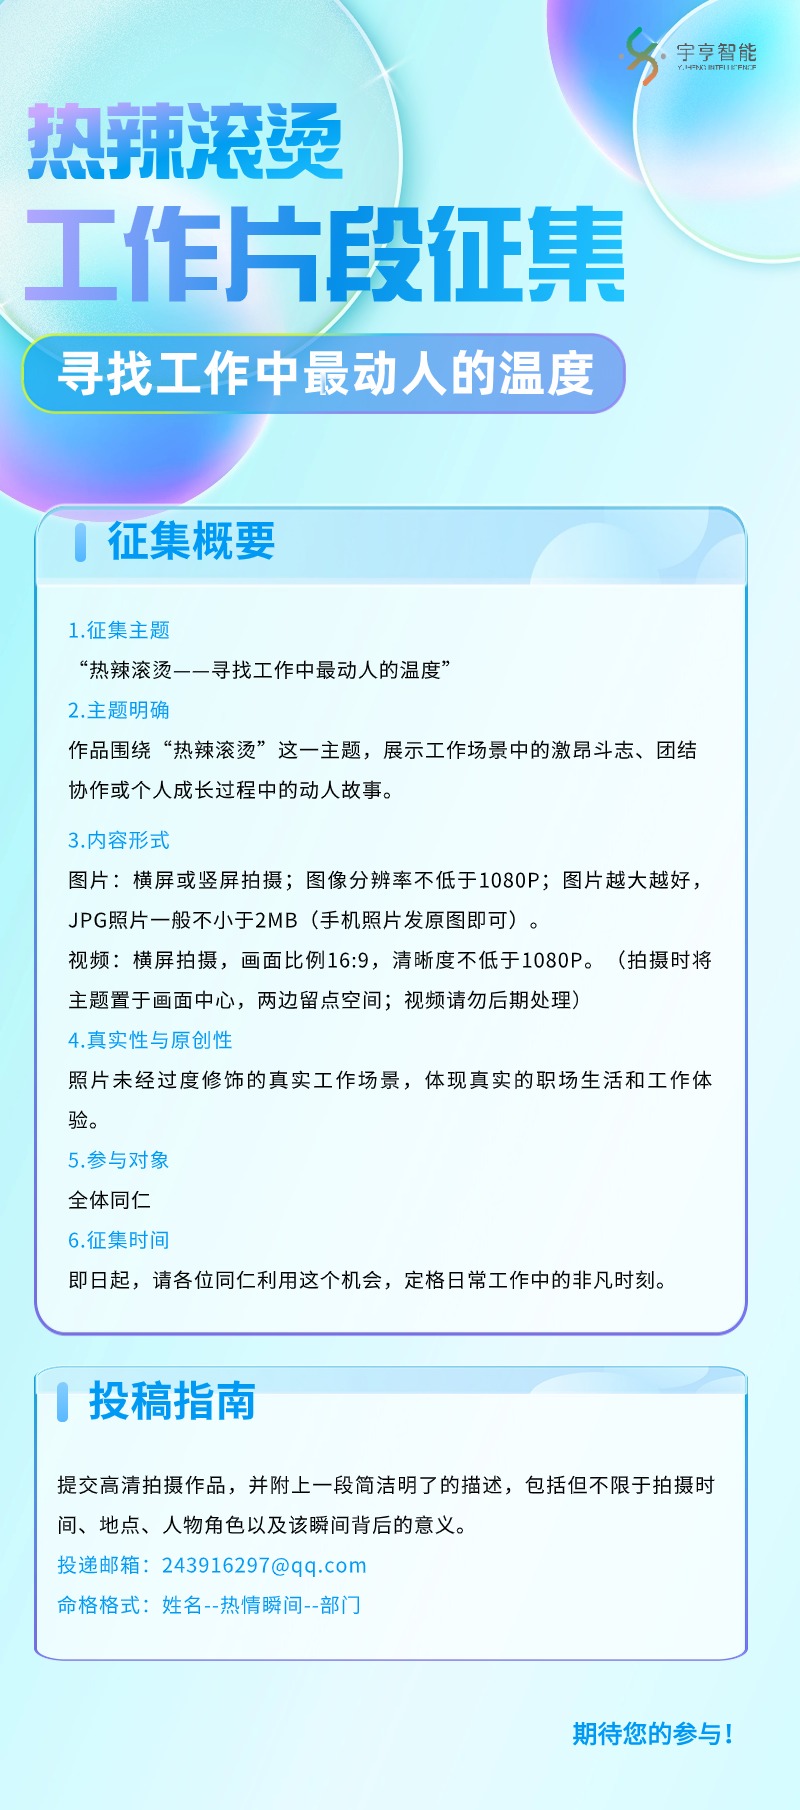 企业行政会议通知商务感长图海报(2) (1).jpg